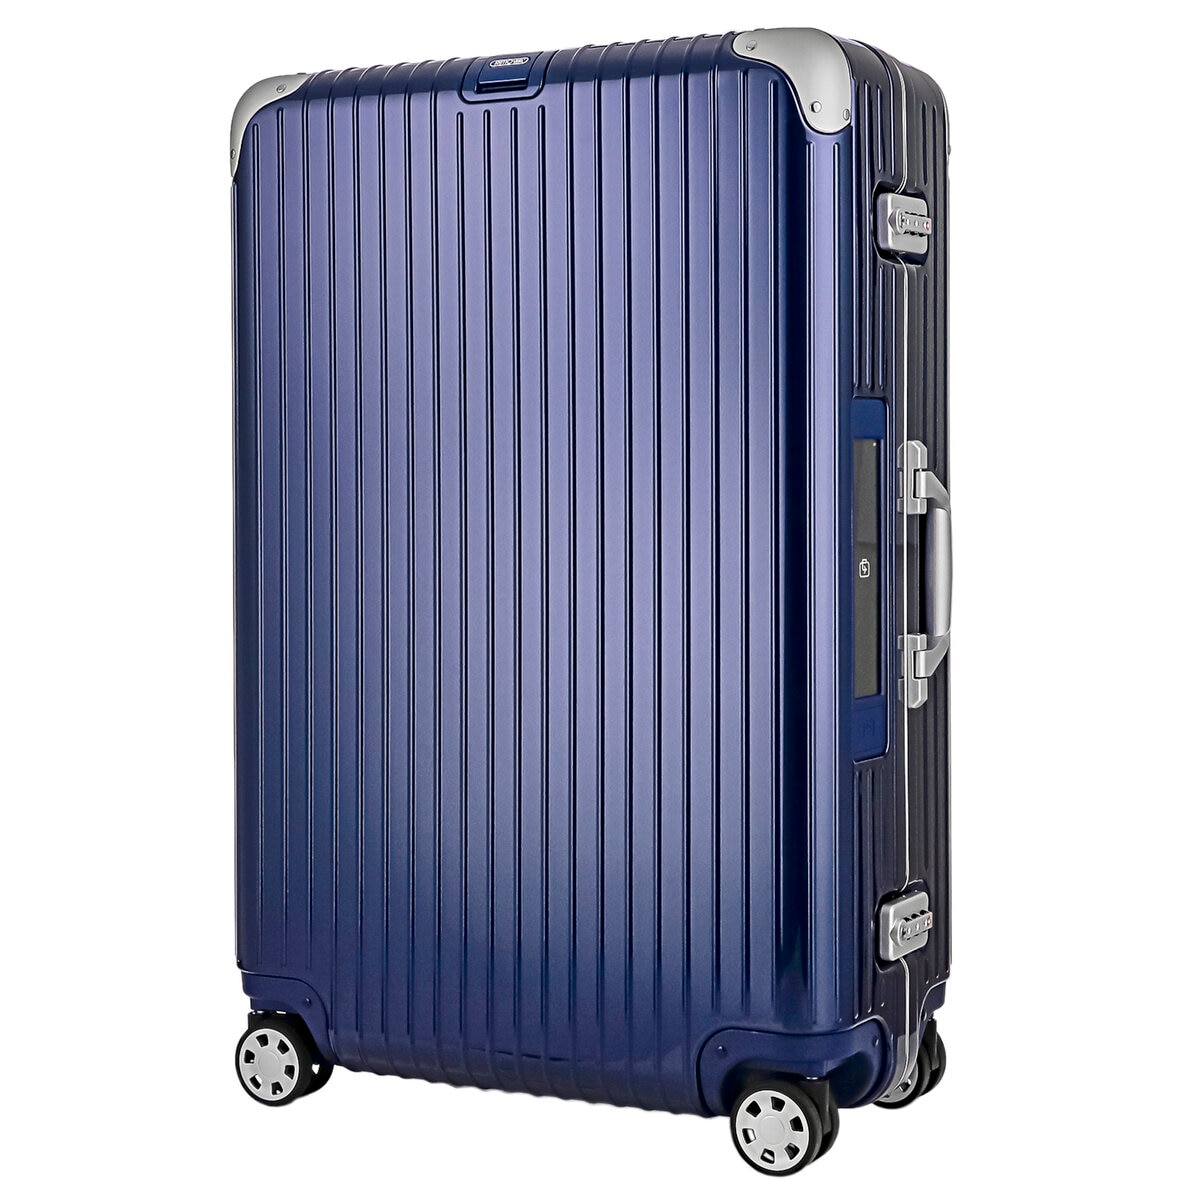 リモワ リンボ スーツケース 98L ナイトブルー 88277215 | Costco Japan